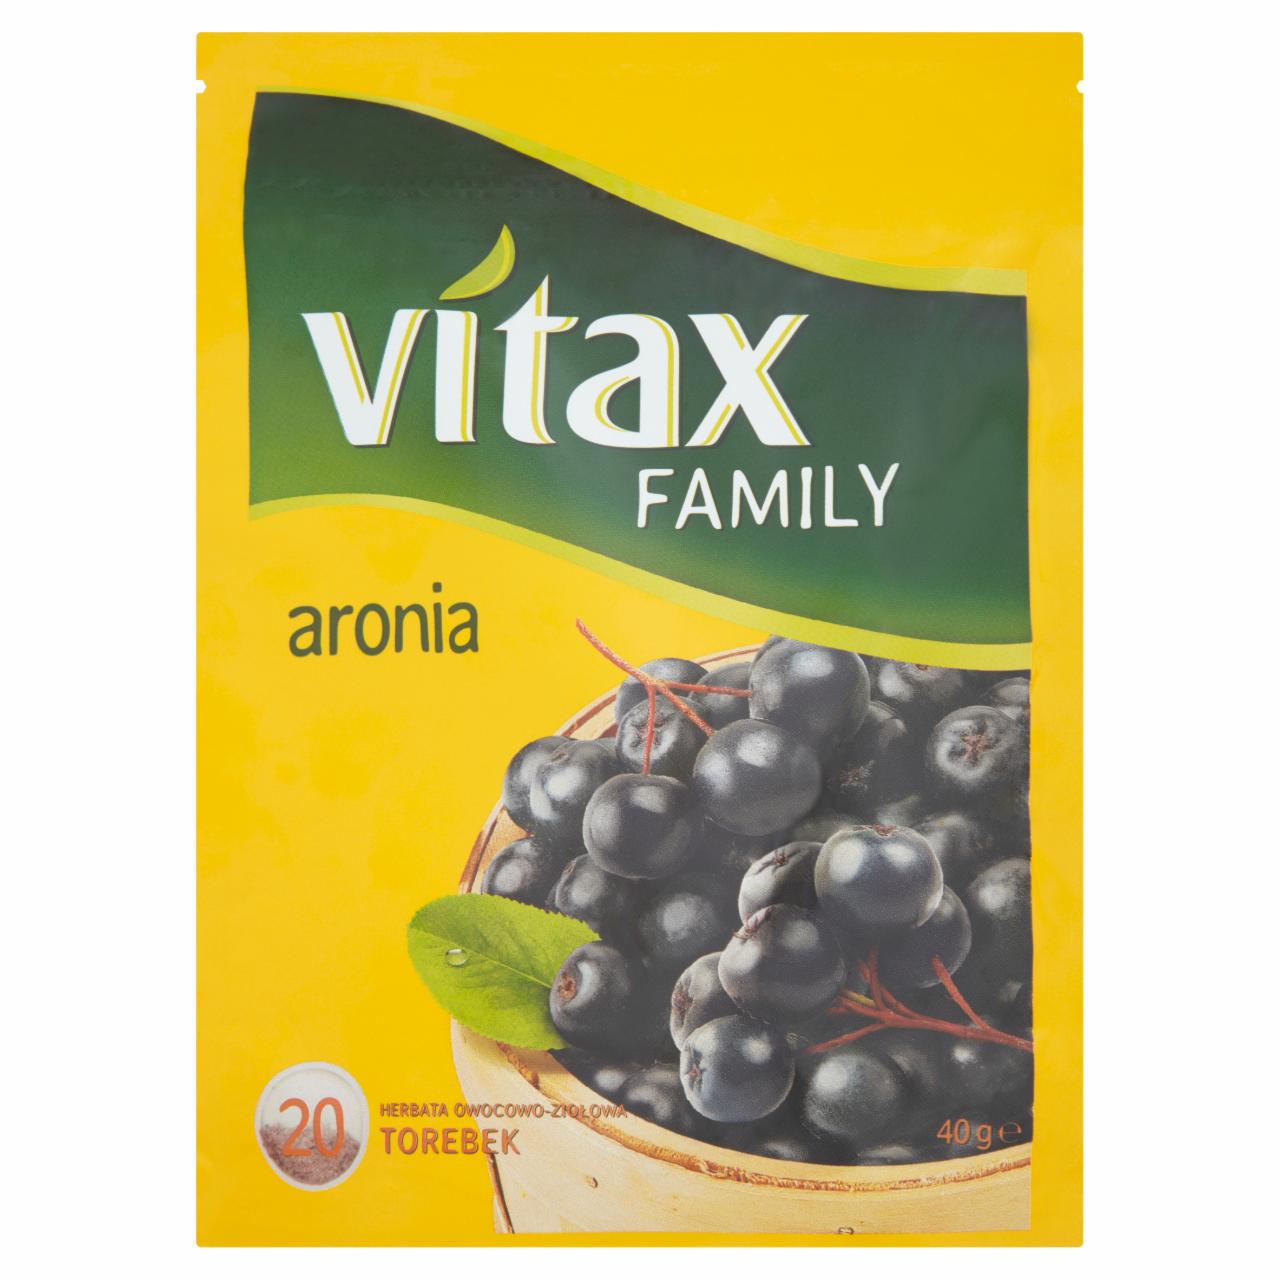 Zdjęcia - Vitax Family aronia Herbata owocowo-ziołowa 40 g (20 torebek)